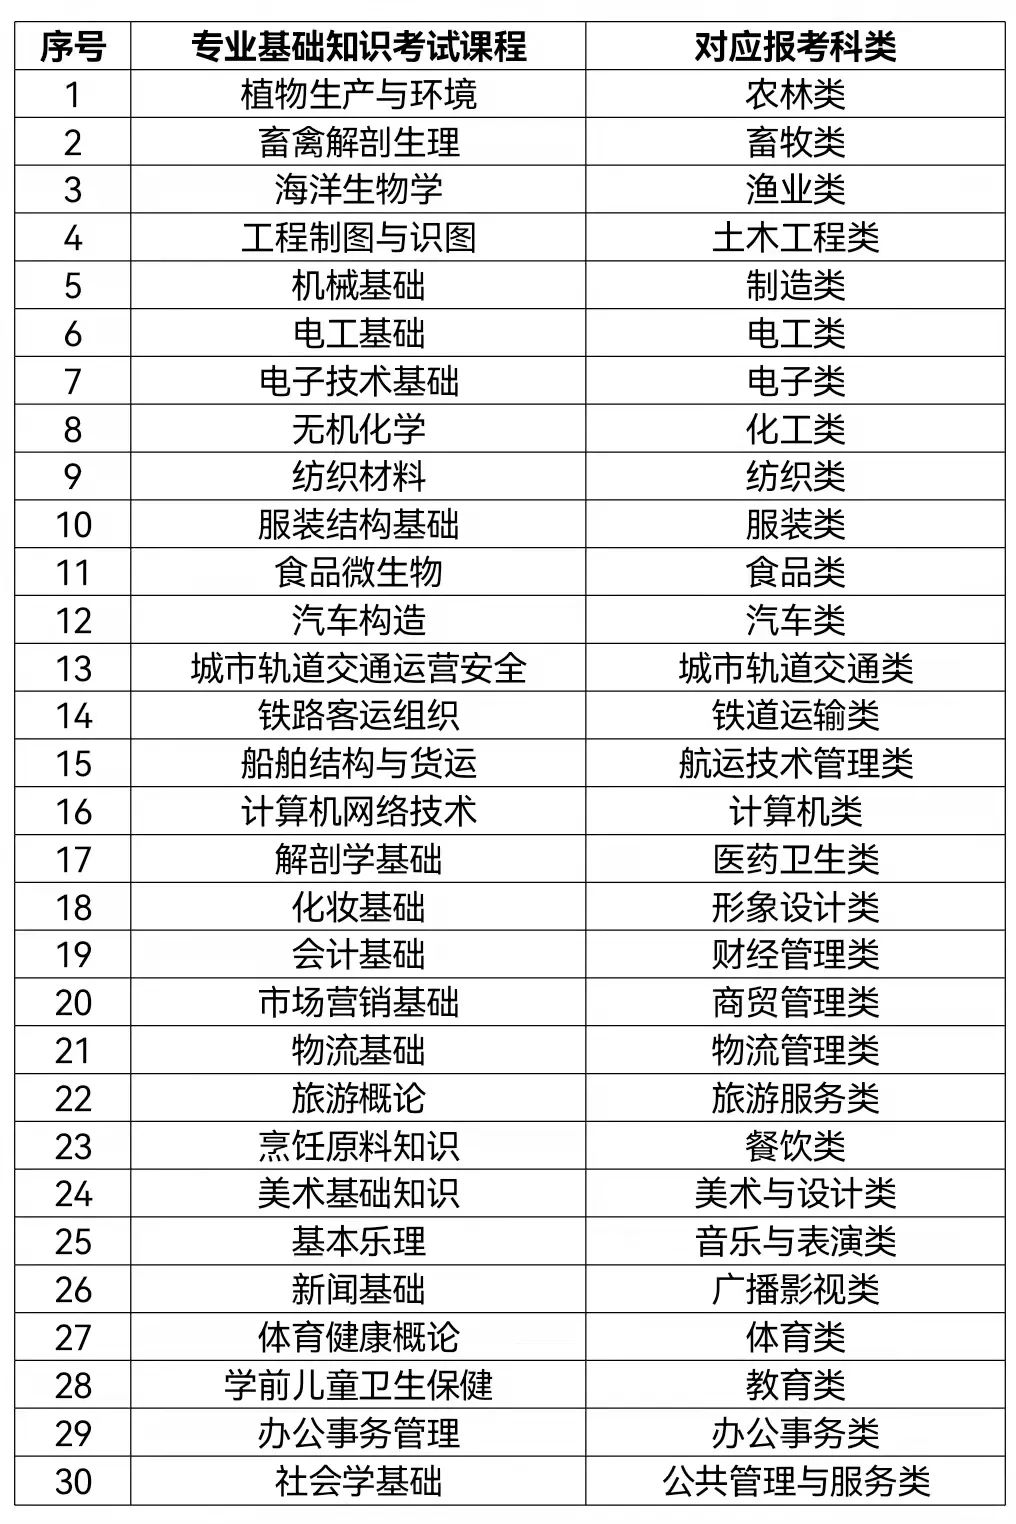 福建2022年高职院校分类考试招生报名工作11月30日启动 (http://www.zjmmc.cn/) 新闻 第2张